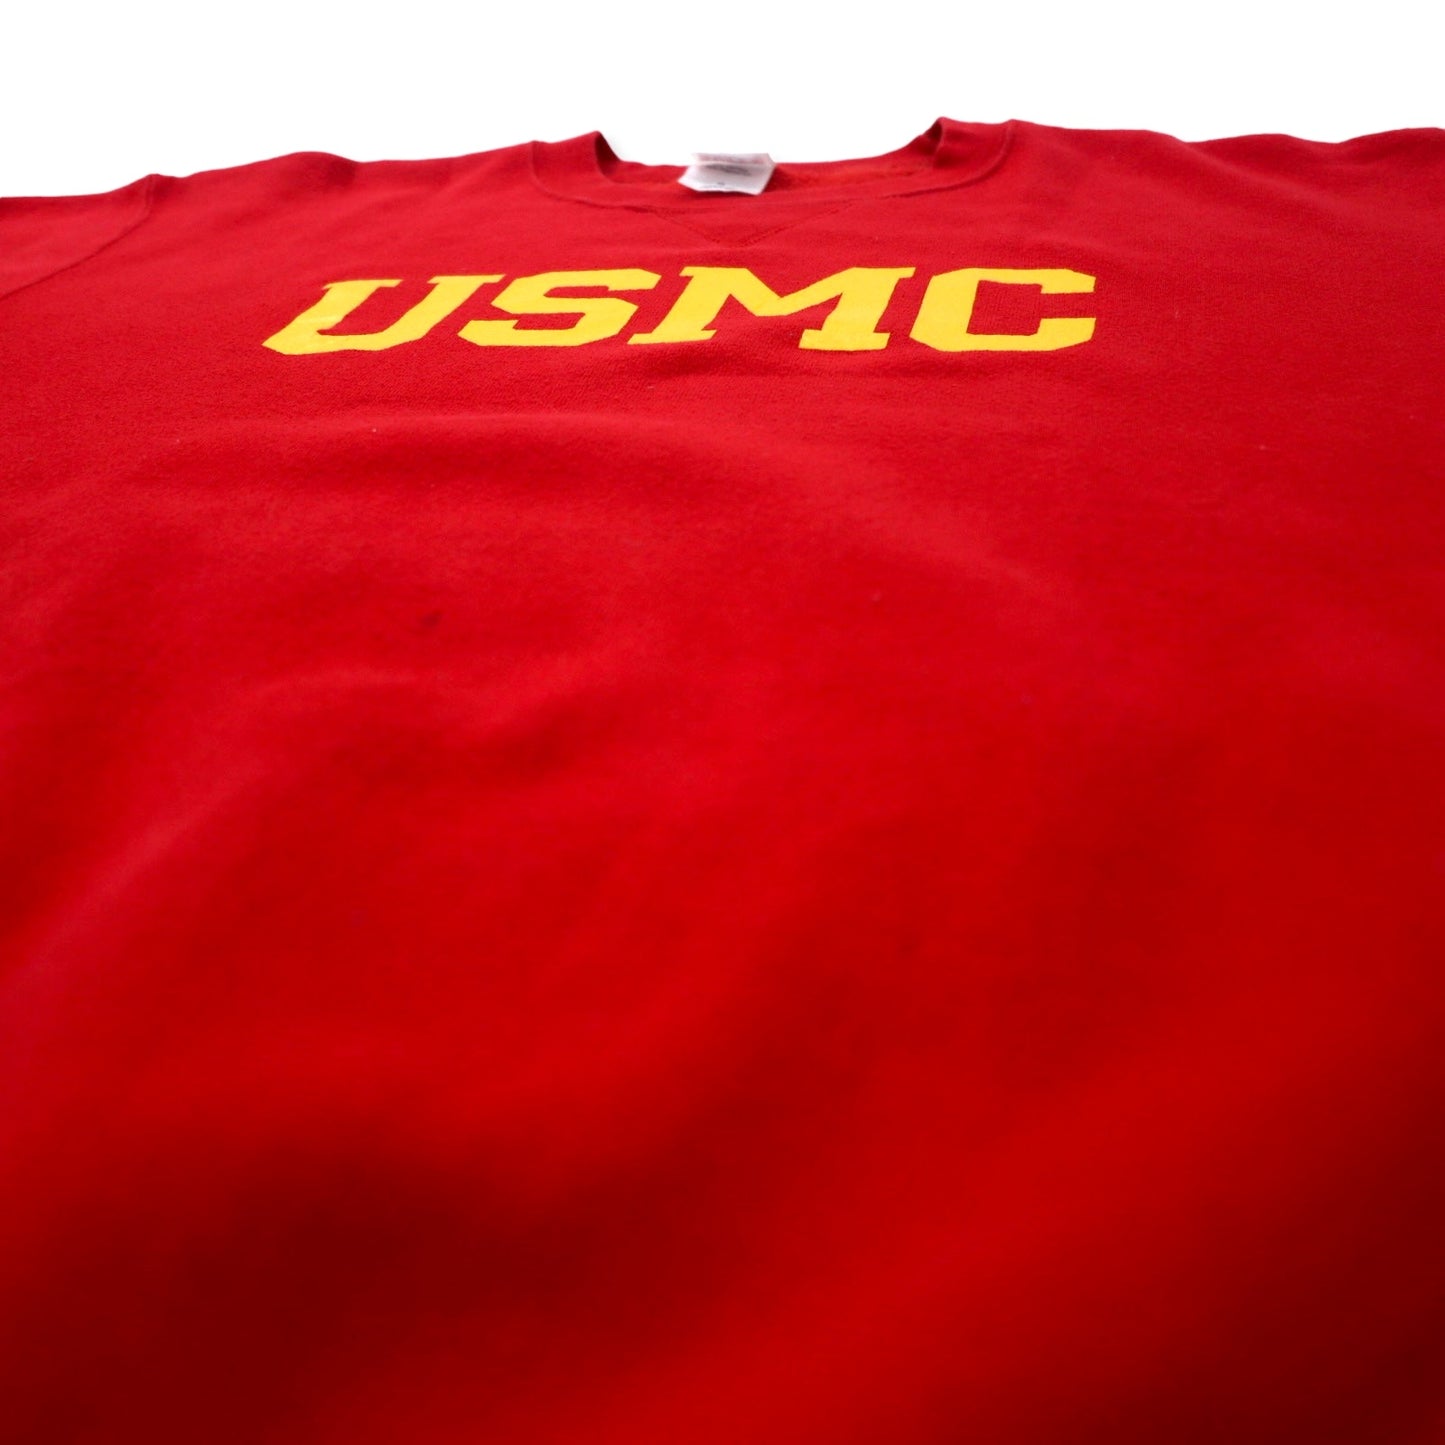 USMC MARINE CORPS トレーニング スウェットシャツ M レッド コットン 裏起毛 ミリタリー SOFFE